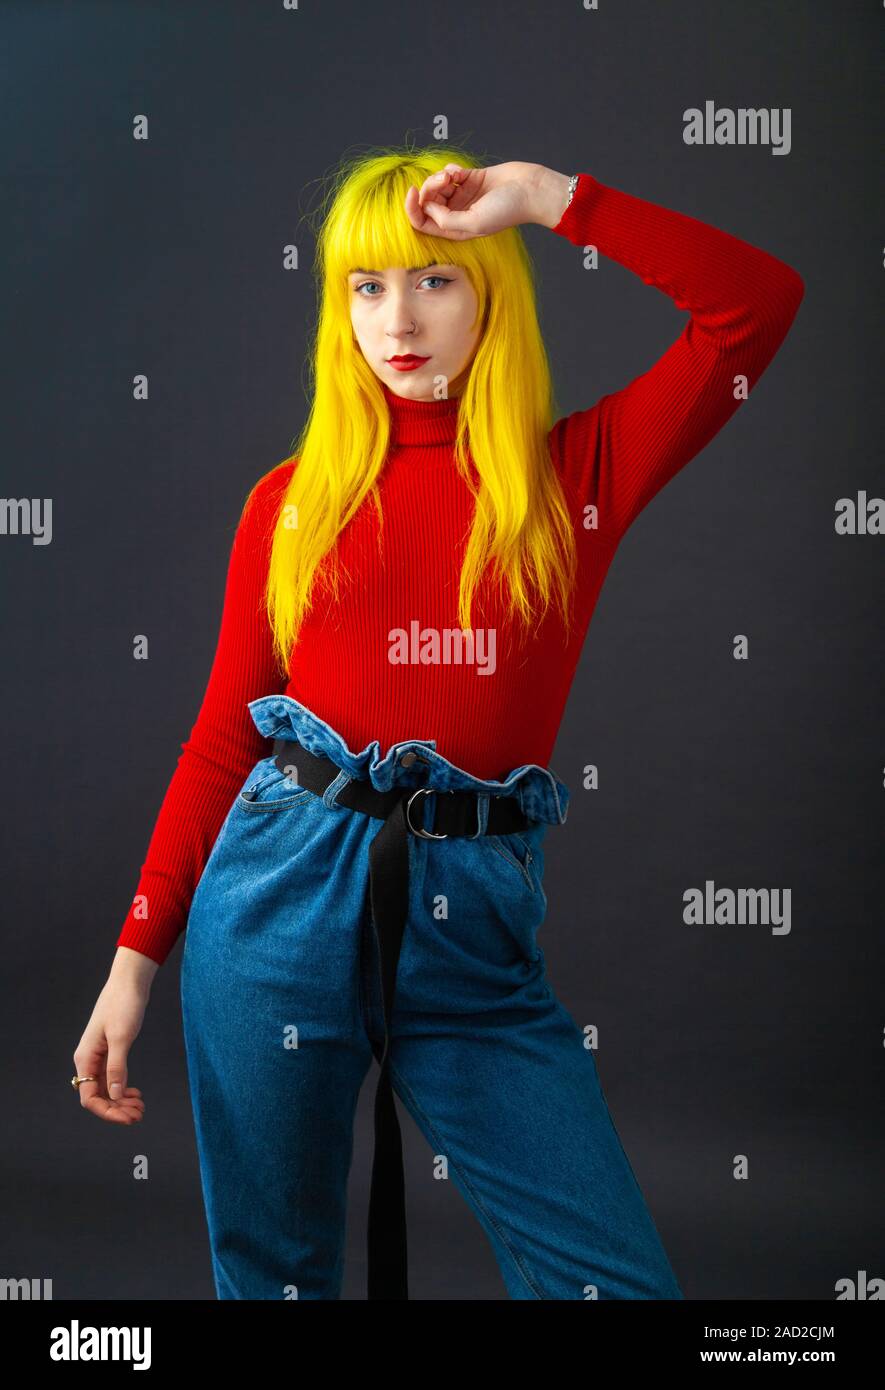 Una giovane donna con colore giallo brillante capelli indossando un rosso brillante a manica lunga in cima contro un semplice sfondo scuro. Foto Stock